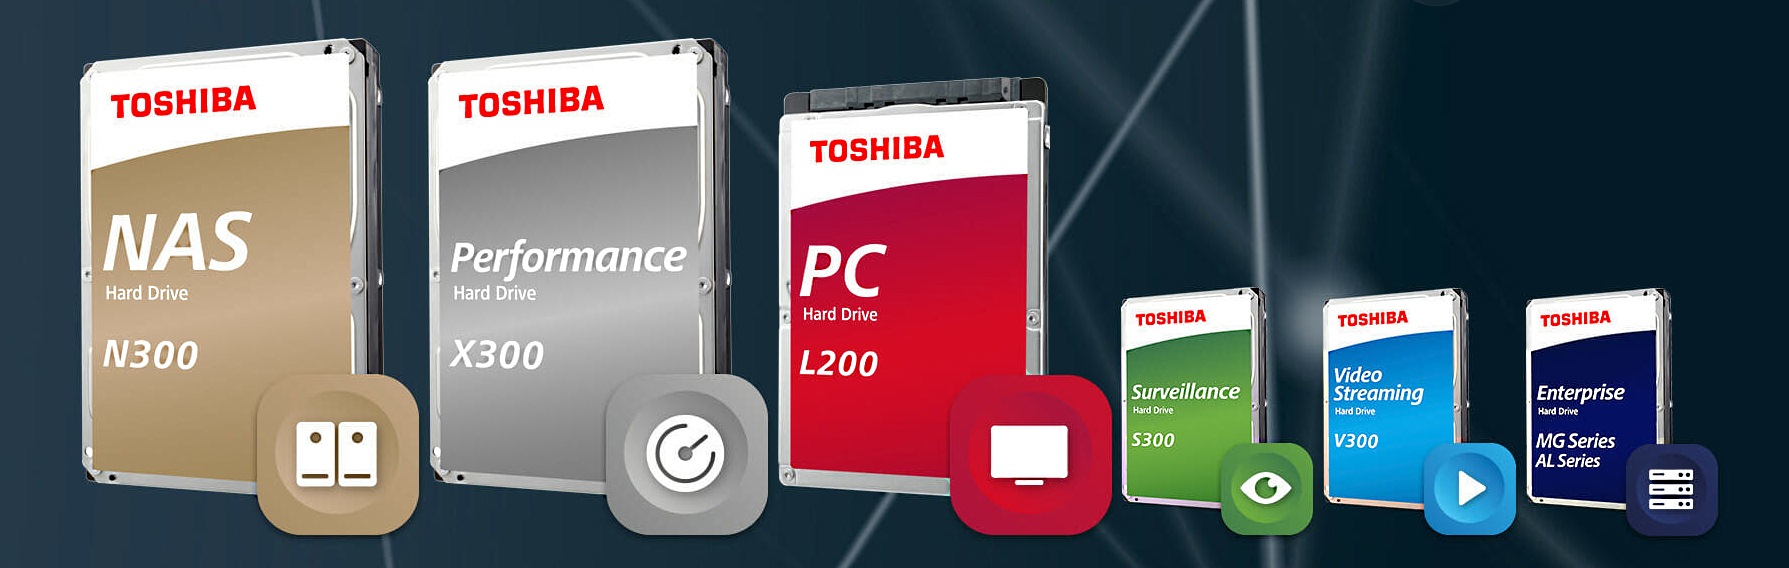 Toshiba представила новые серии жестких дисков - P300, L200, X300, N300, V300 и S300 